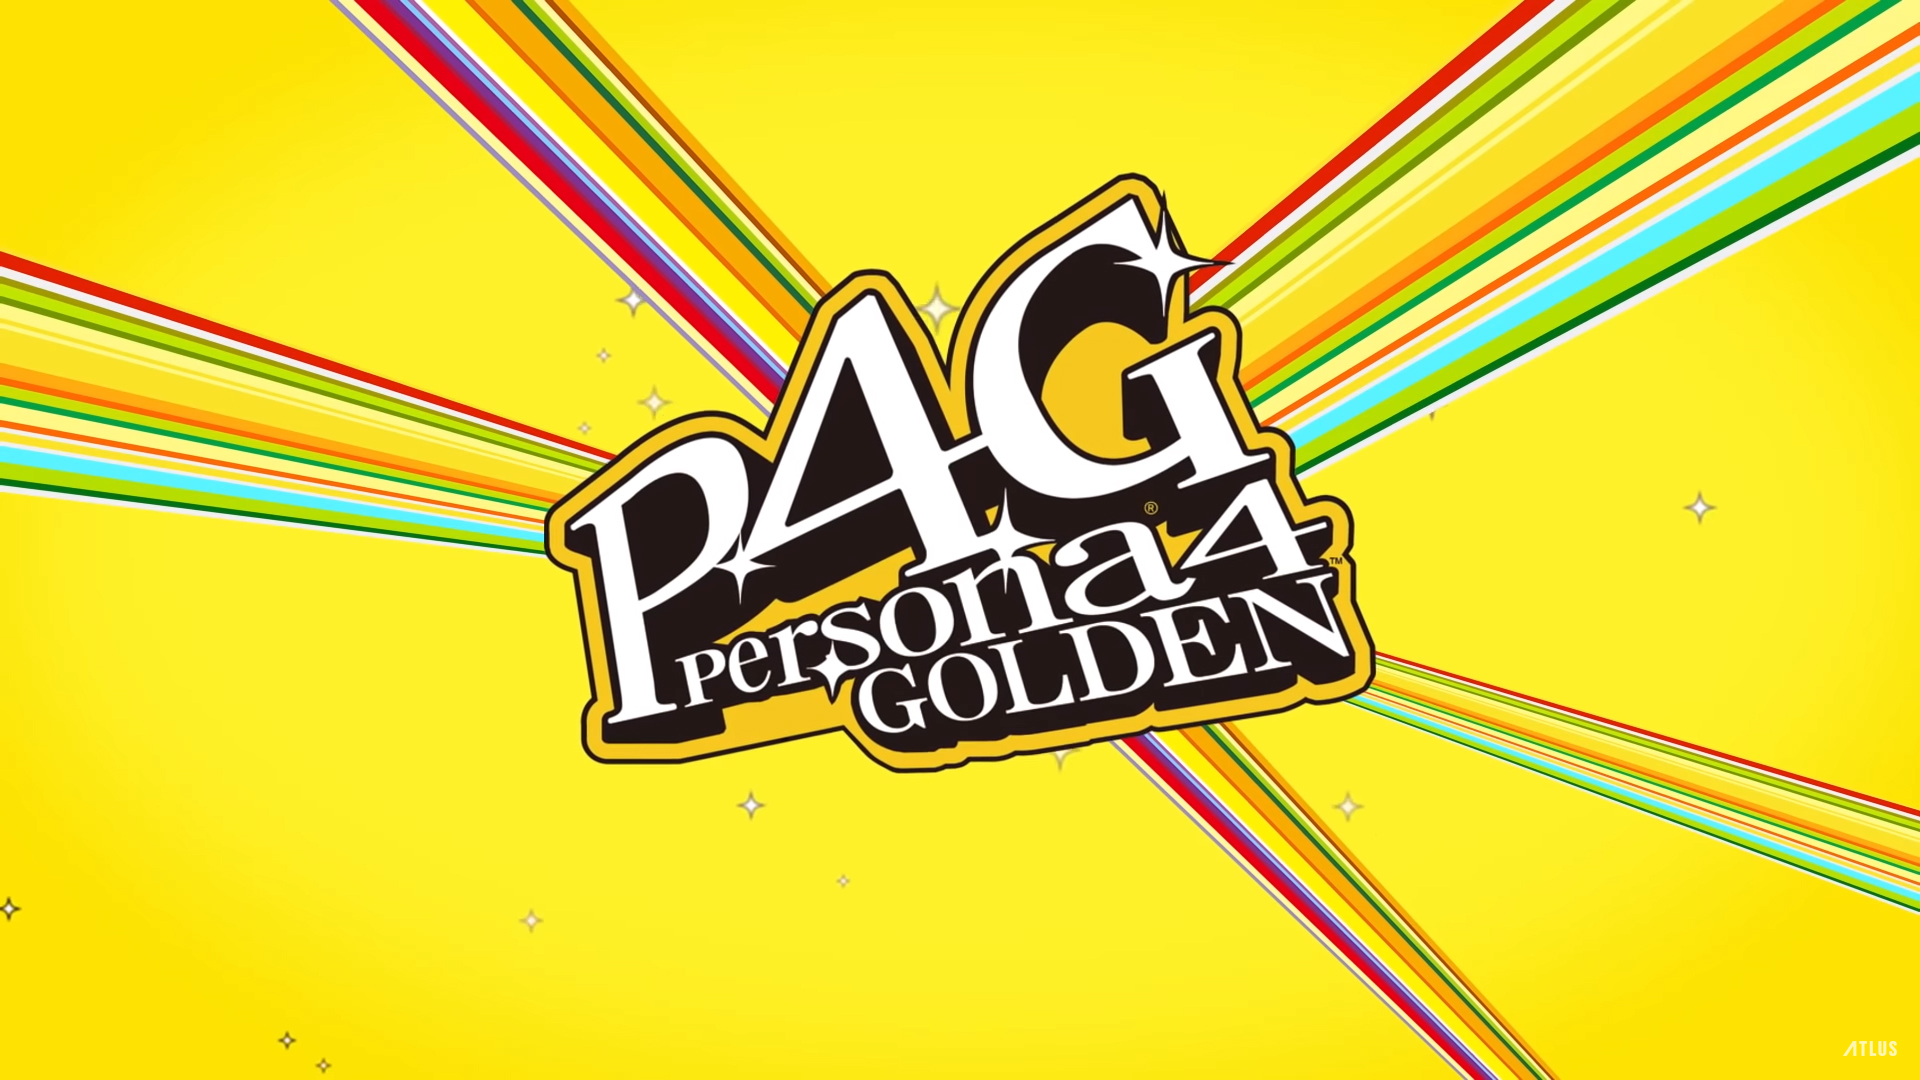 Persona 4 Golden Comes to PC via Steam Store